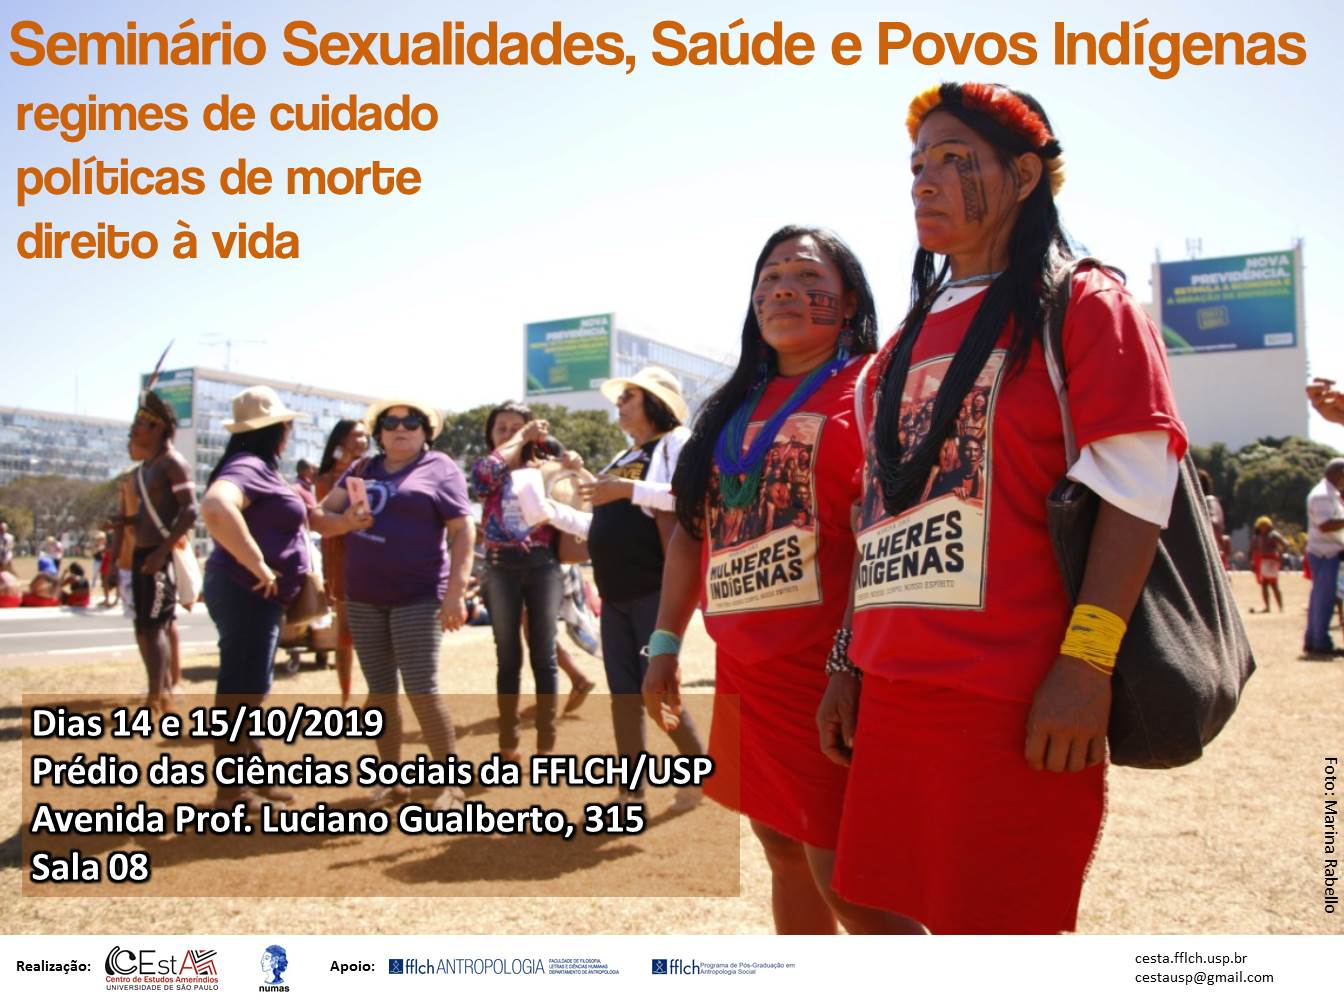 Seminário Sexualidades, Saúde e Povos Indígenas: regimes de cuidado, políticas de morte e direito à vida